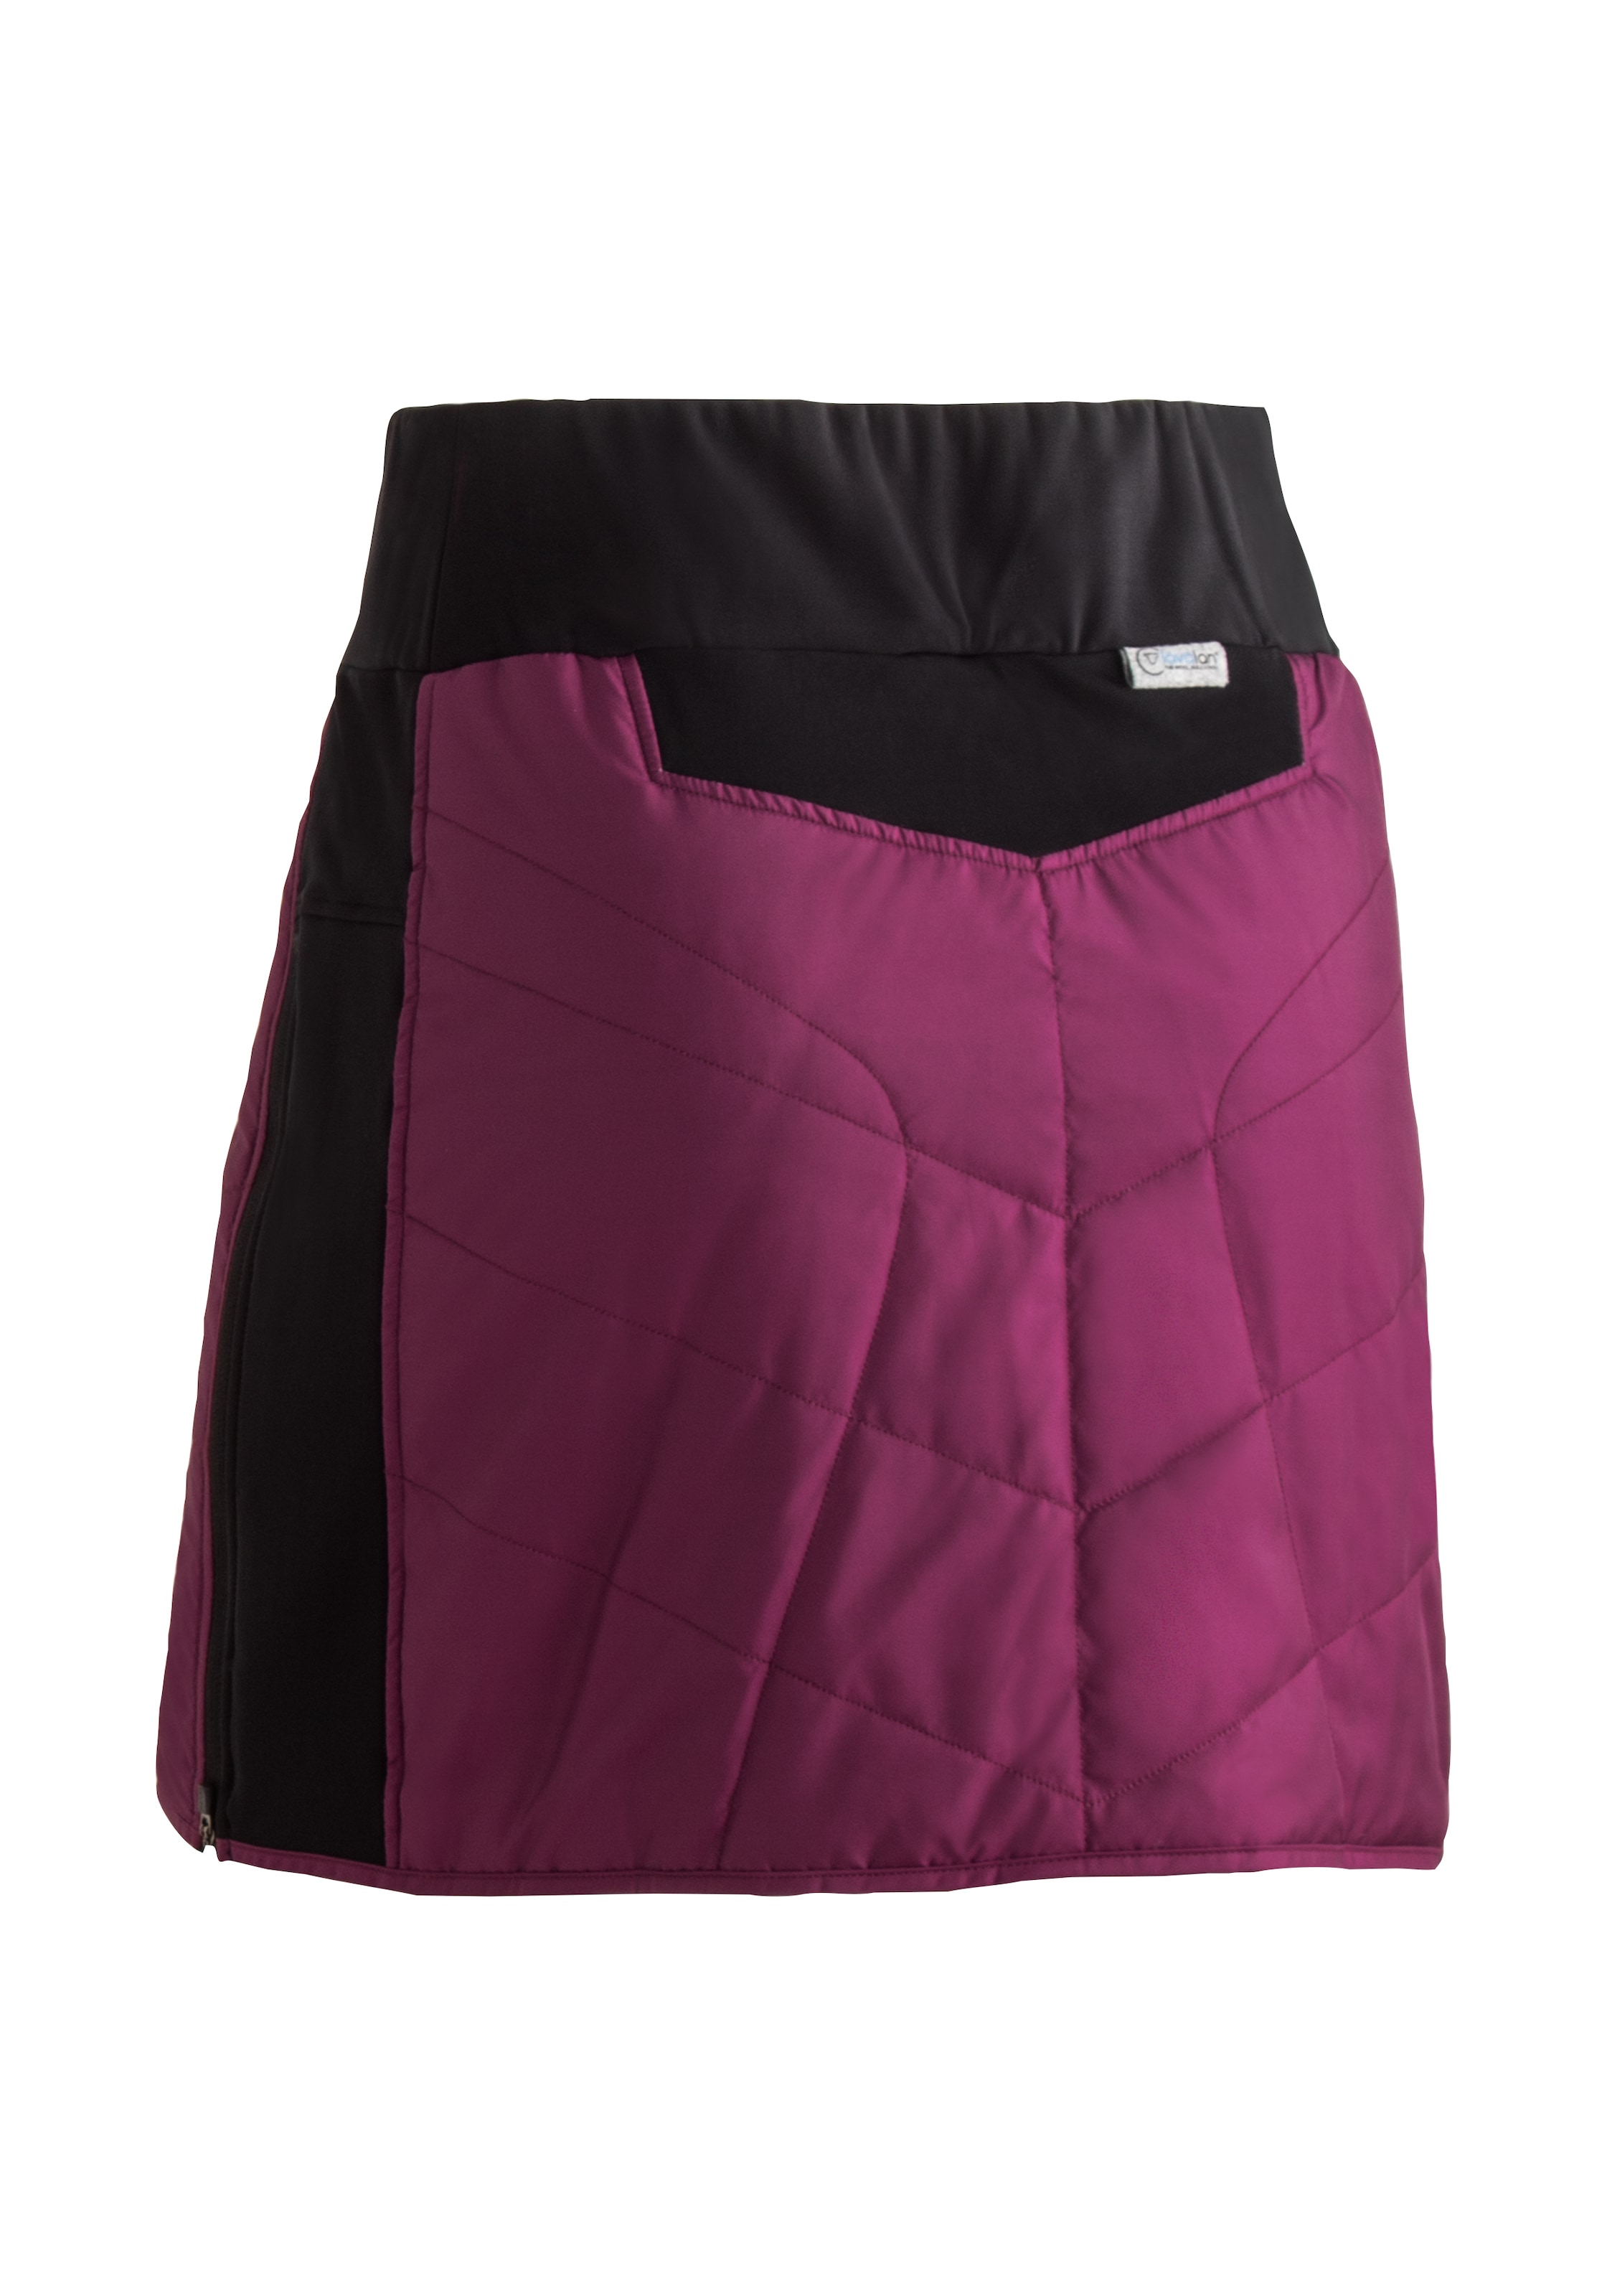 Maier Sports Sweatrock »Skjoma Skirt W«, Damen Überrock, atmungsaktiv und windabweisend, elastischer Bund